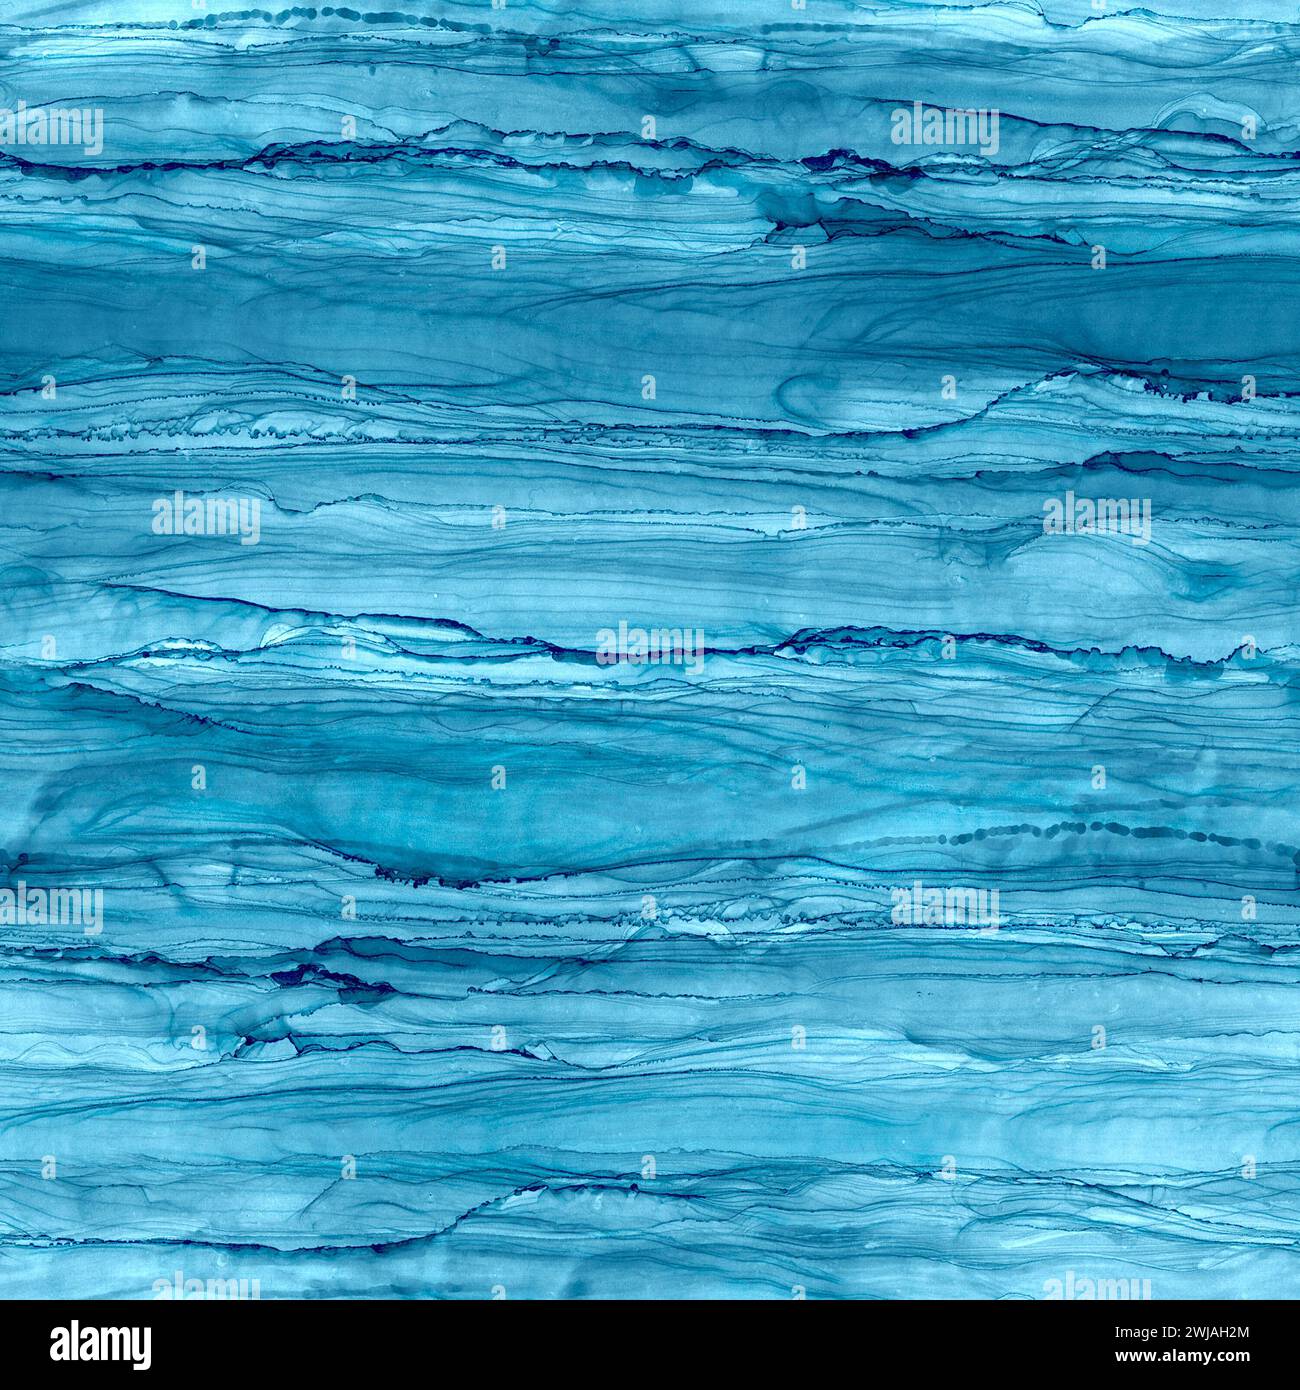 Tinta de alcohol abstracta líquido de lujo a rayas de fondo contemporáneo. Dibujado a mano azul marino teal rayas fluidas, salpicaduras elementos patrón sin fisuras. Imprimir Foto de stock